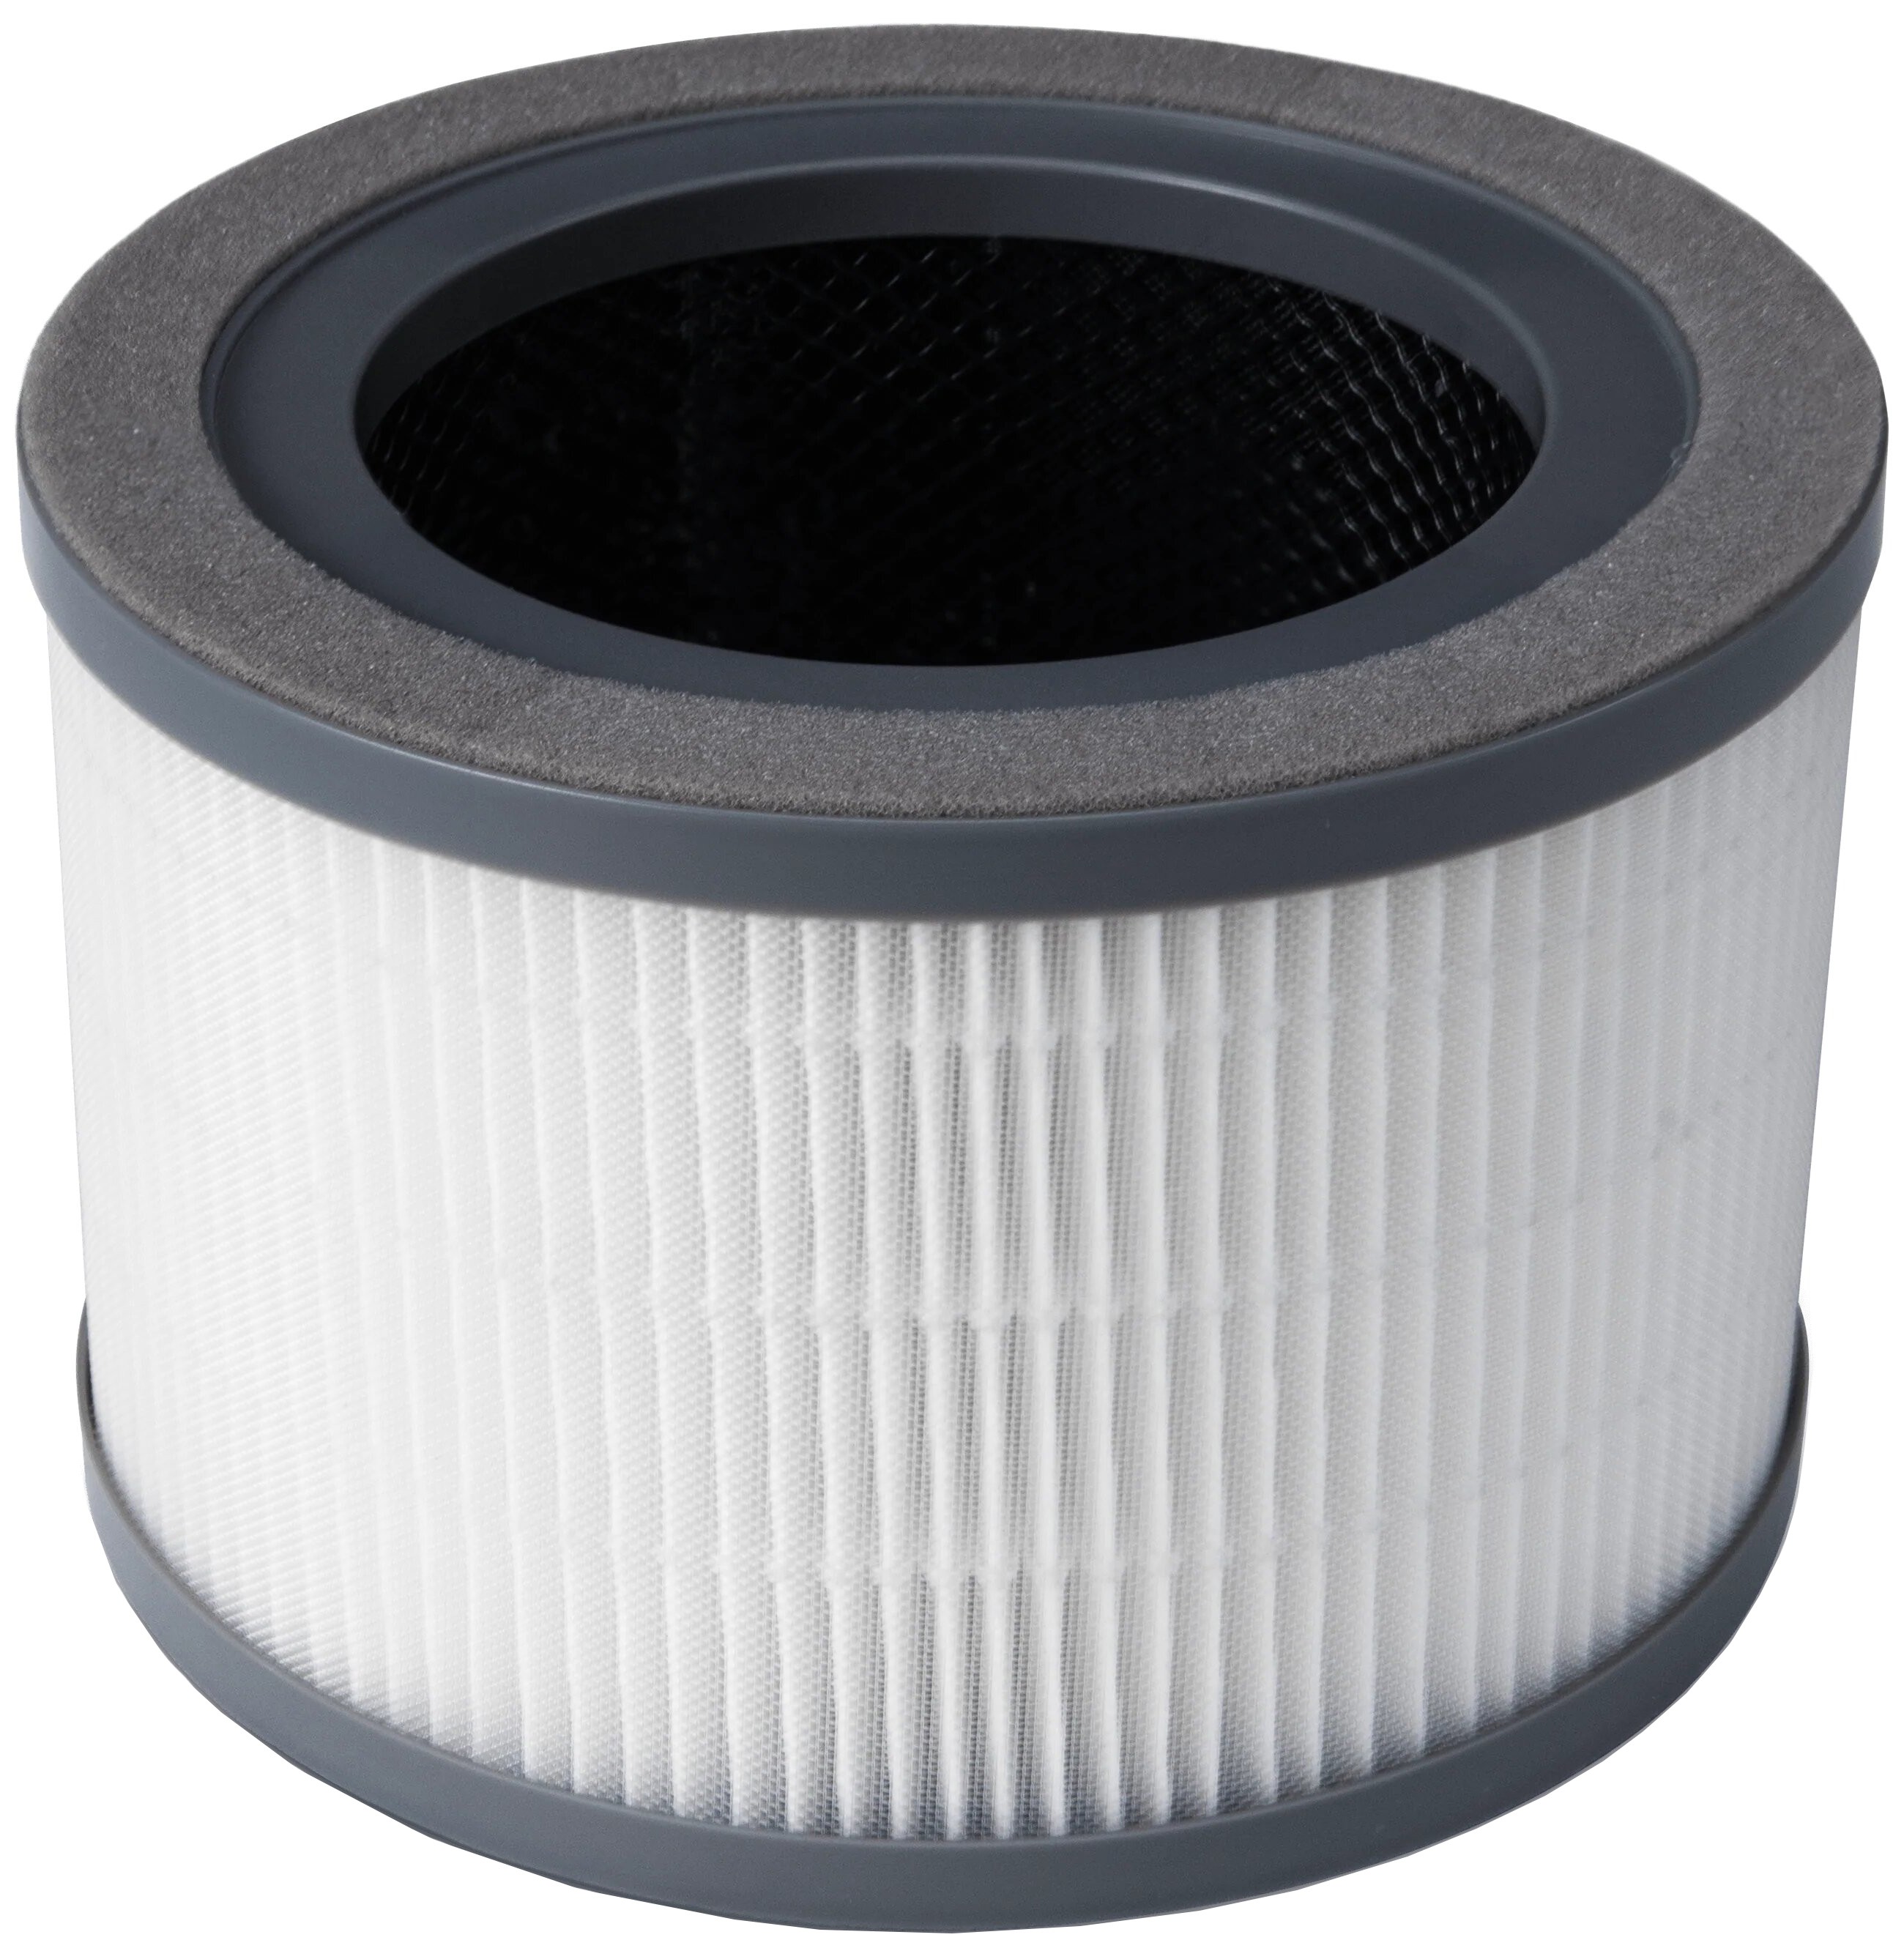 Фильтр для увлажнителя воздуха Levoit Air Cleaner Filter Vista 200 True HEPA 3-Stage (HEACAFLVNEU0030)